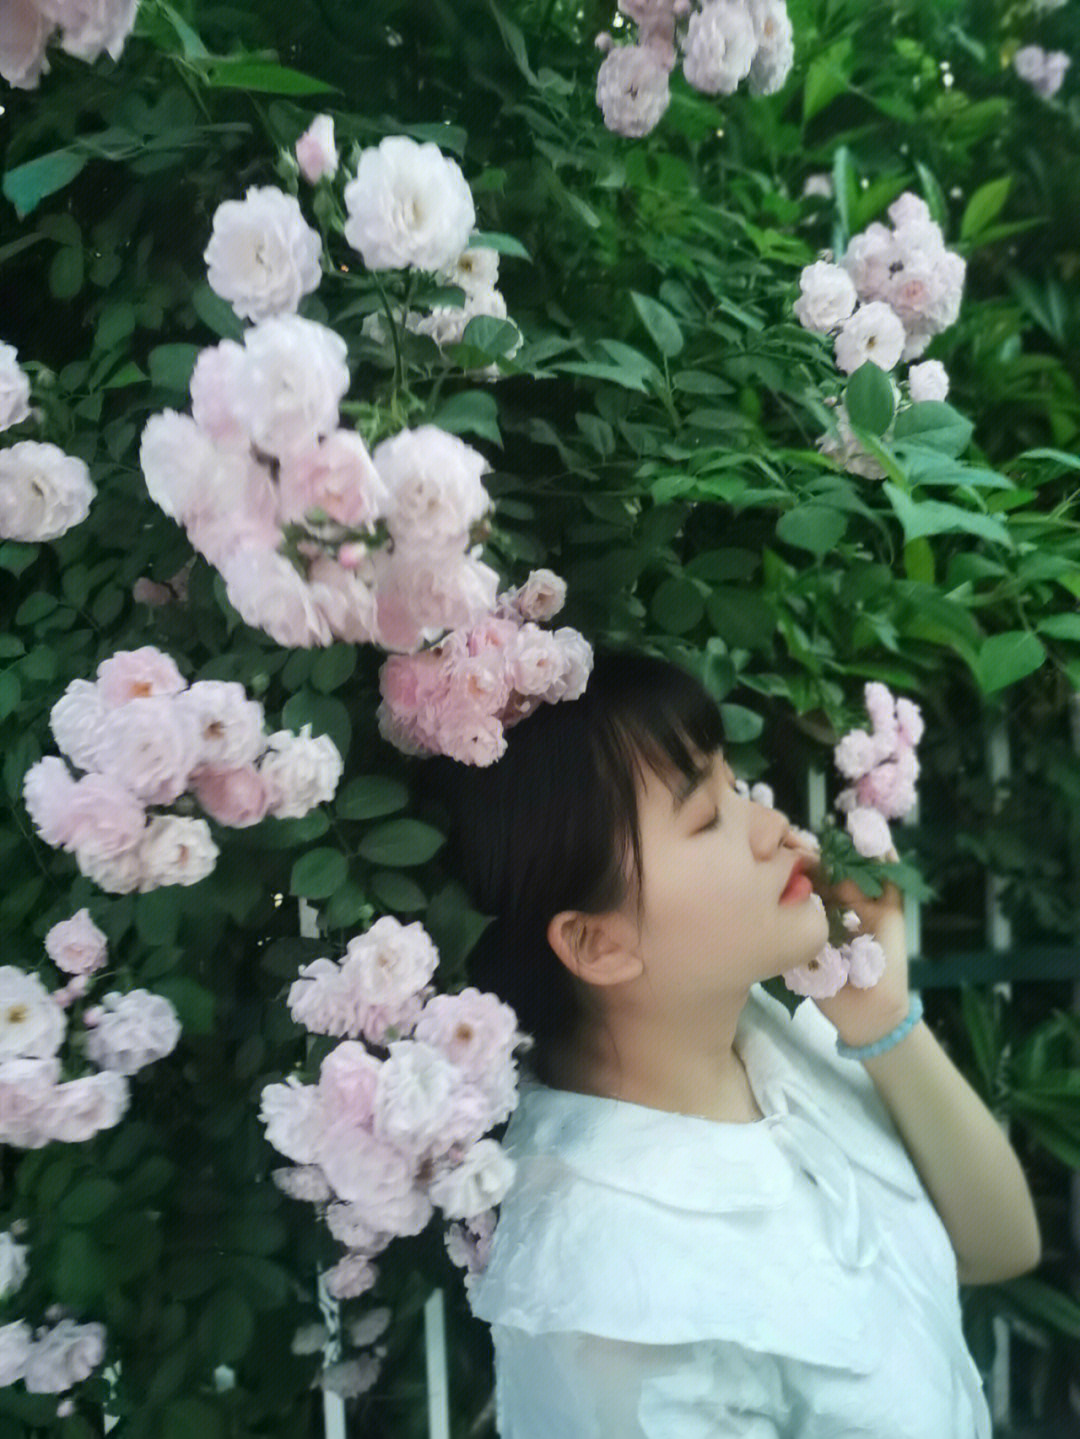 细嗅蔷薇四月的蔷薇花